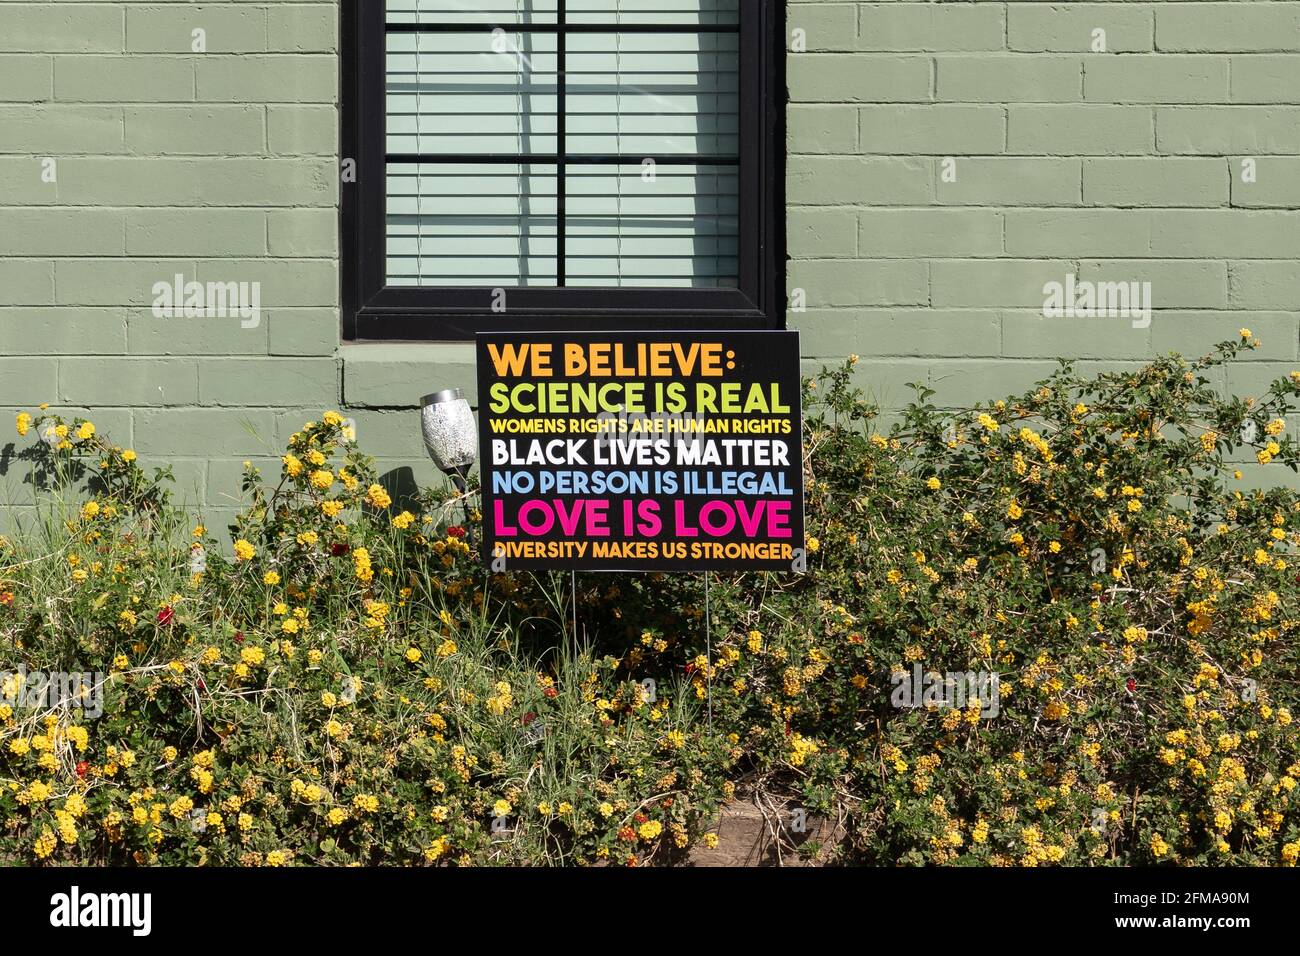 Phoenix, AZ - 20 marzo 2021 crediamo che il segno in un cortile anteriore dice che la scienza è reale, i diritti delle donne sono diritti umani, vite nere materia, nessuna persona è Ill Foto Stock